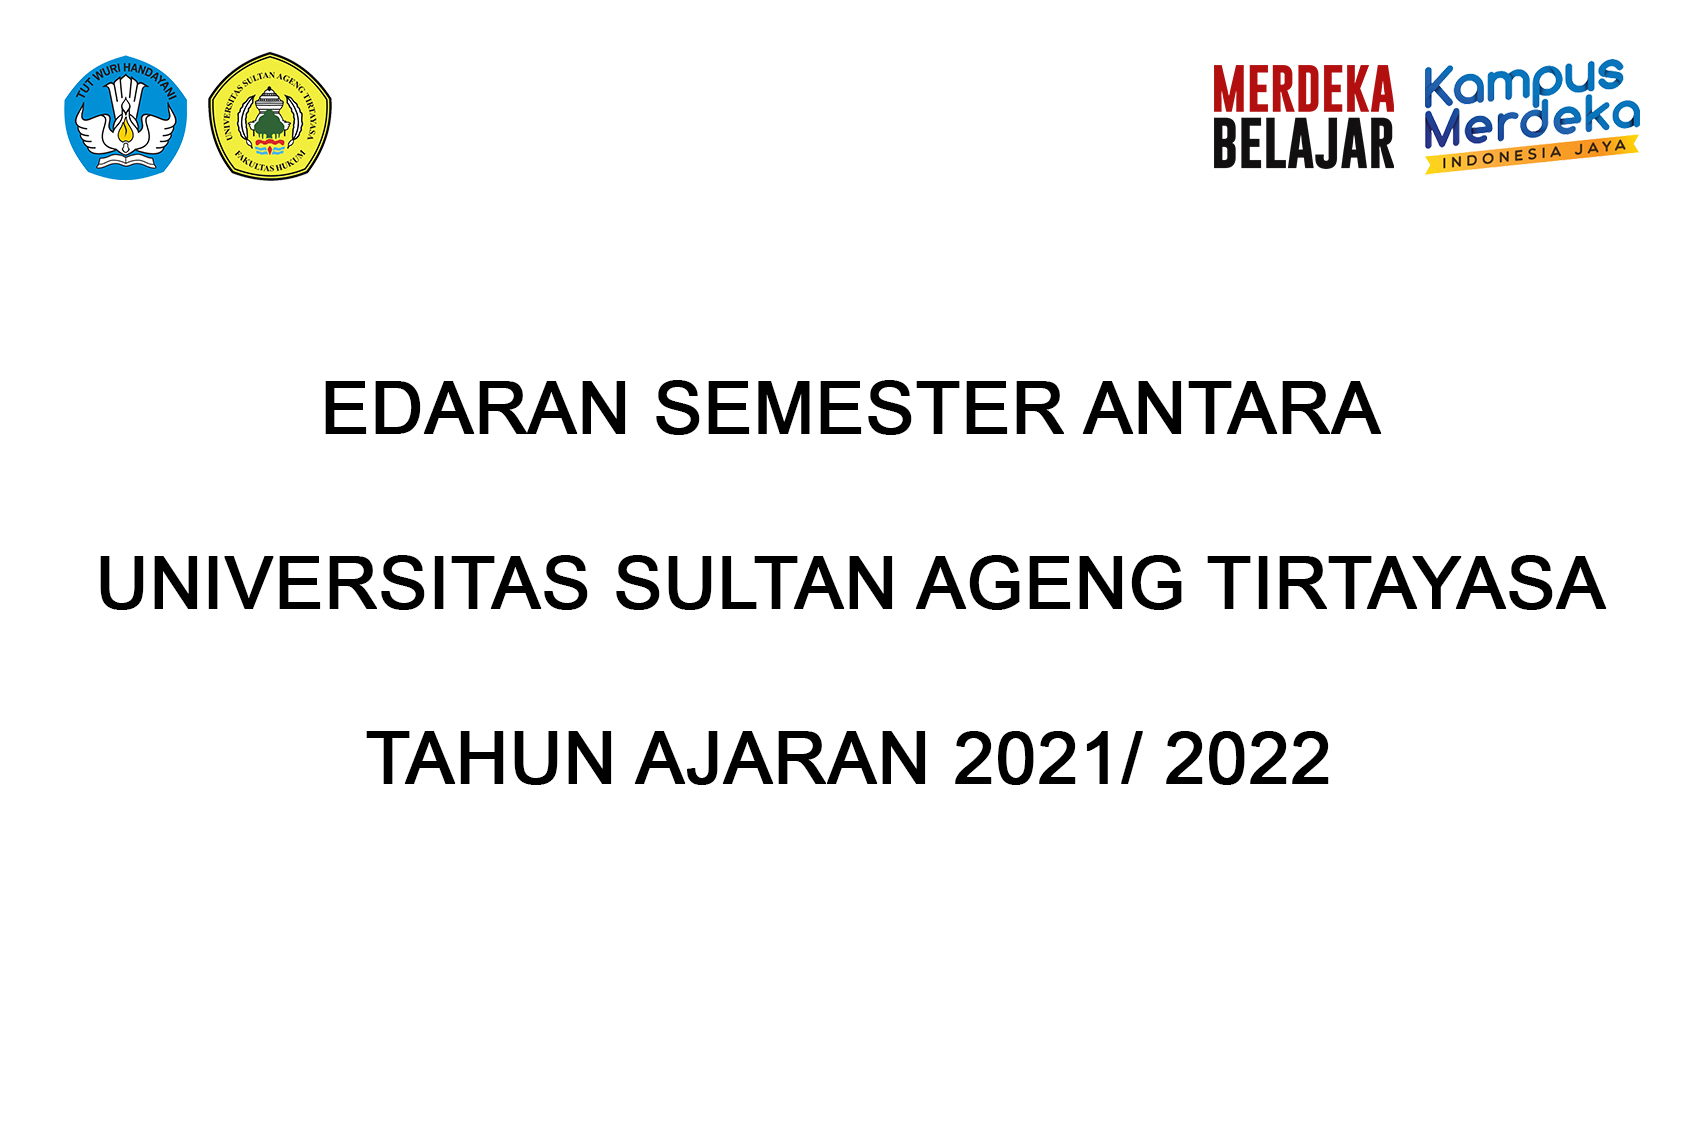 Edaran Pelaksanaan Semester Antara Universitas Sultan Ageng Tirtayasa Tahun Ajaran 2021/2022